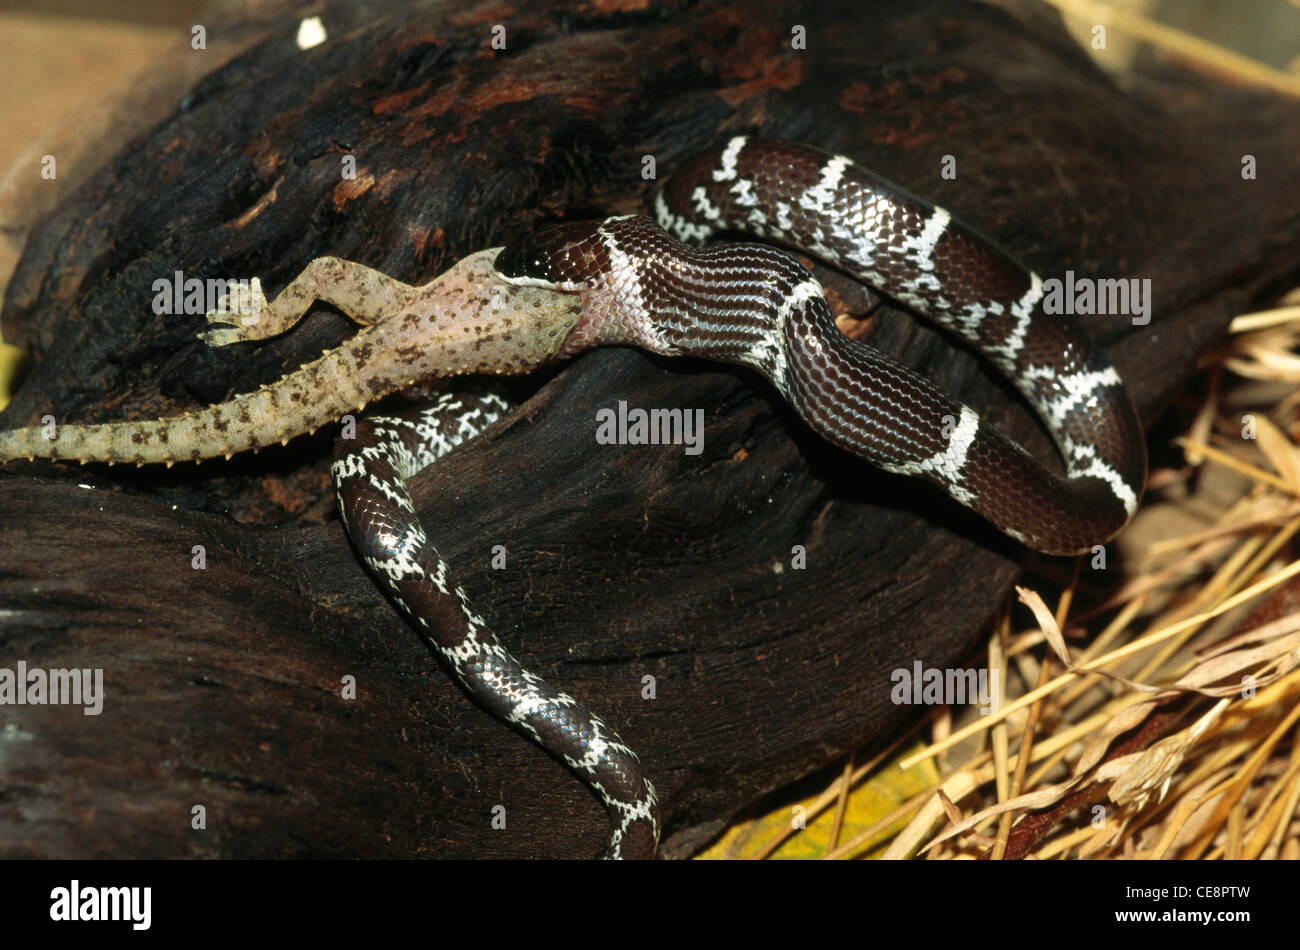 80423 IKA : Reptiles , les serpents , Loup commun Lycodon aulicus Couleuvre tachetée alimentation Gecko Maison Henidactylus brook Banque D'Images